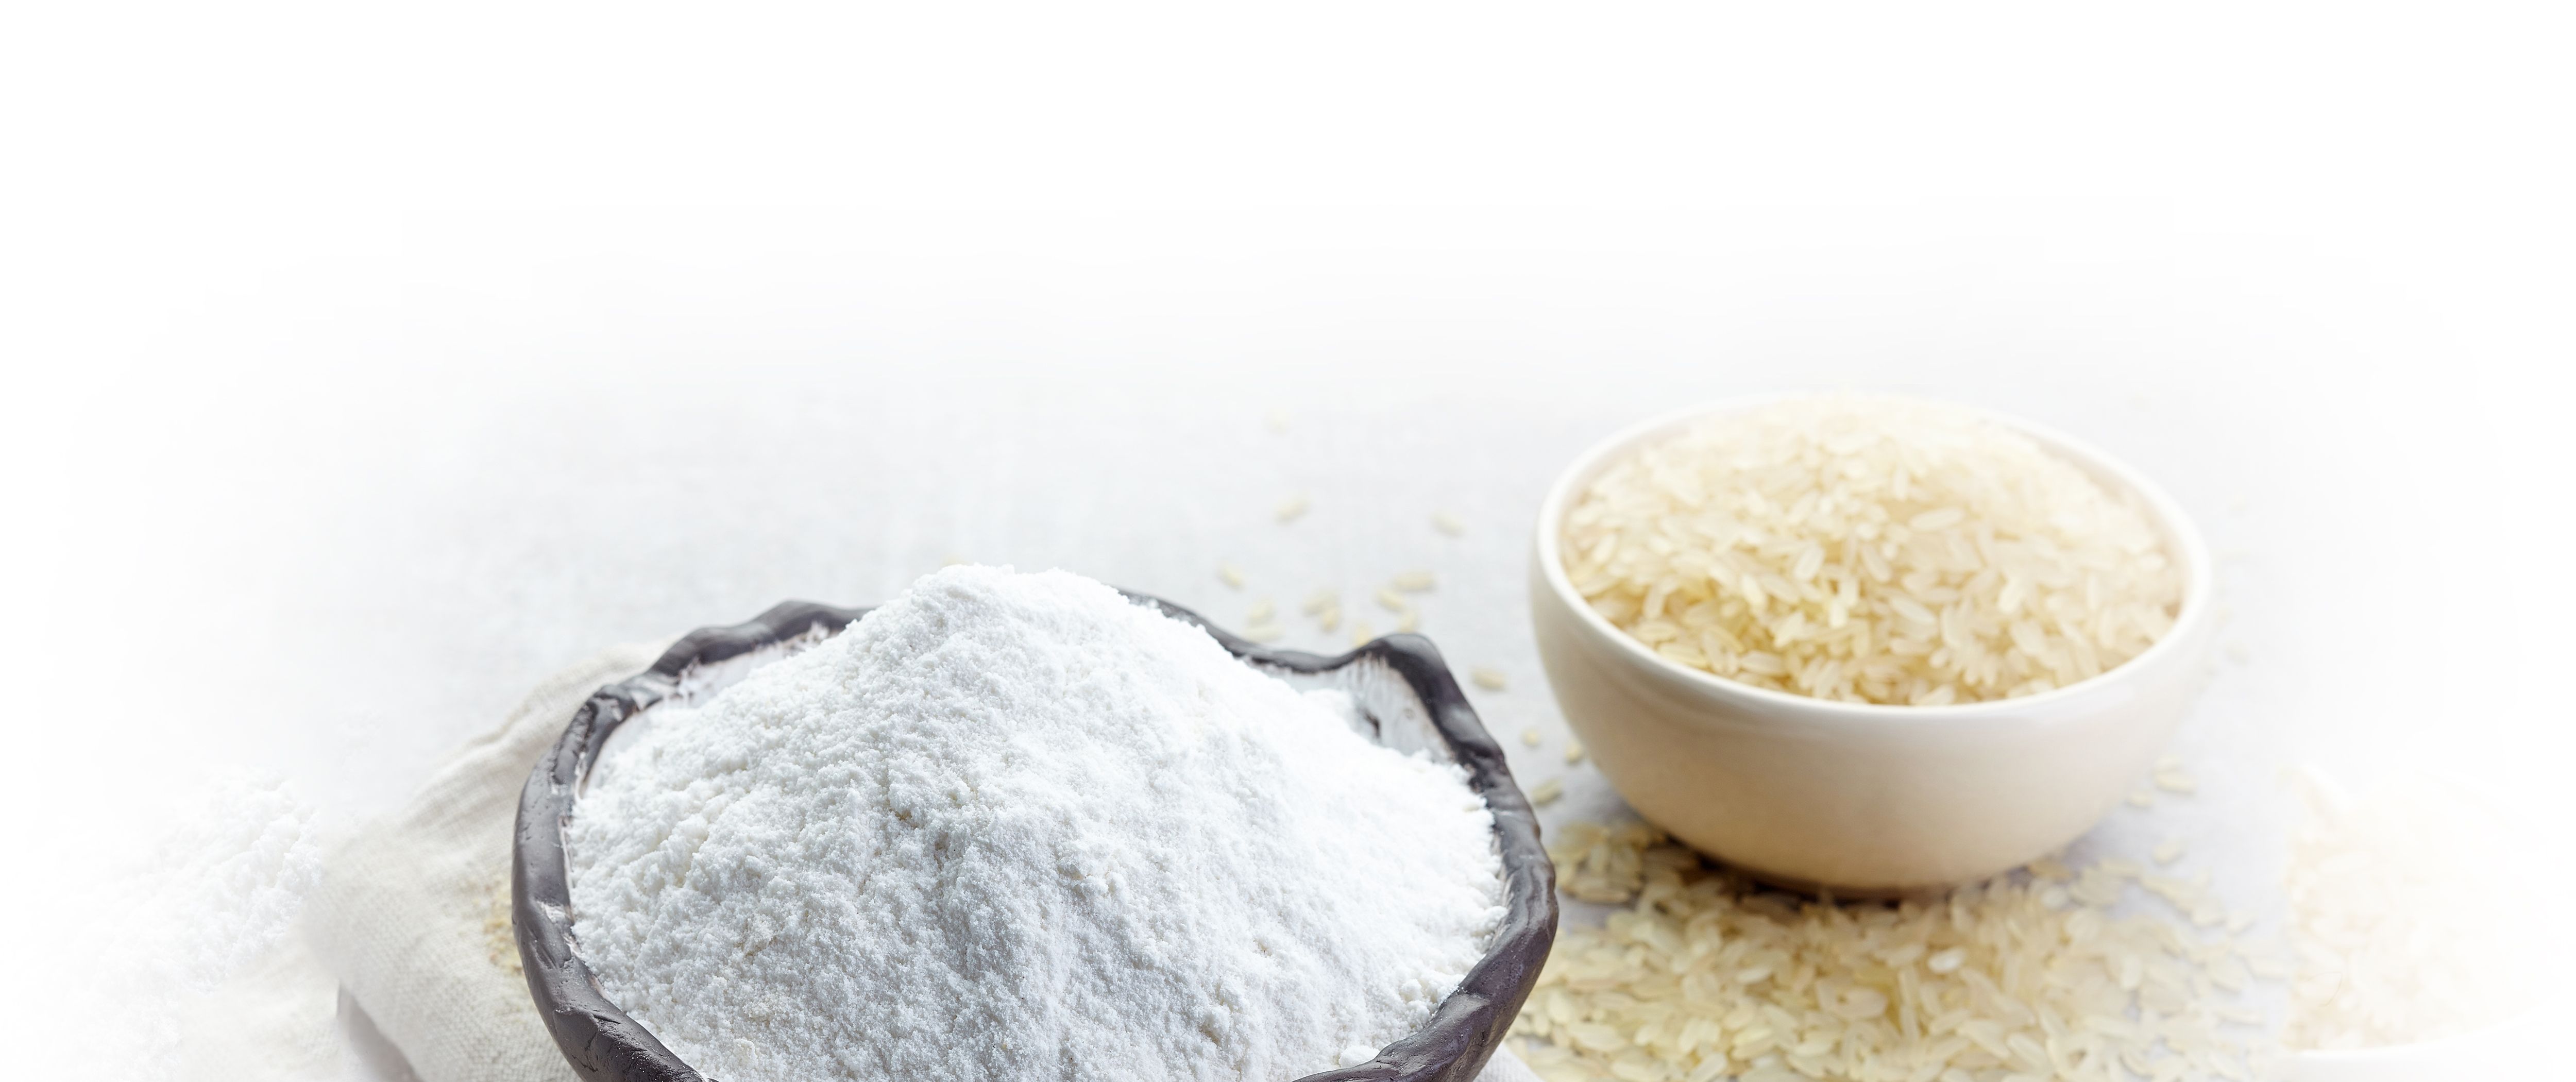 produits exofood asie riz farine de riz legumes exotique deshydrate asiatique